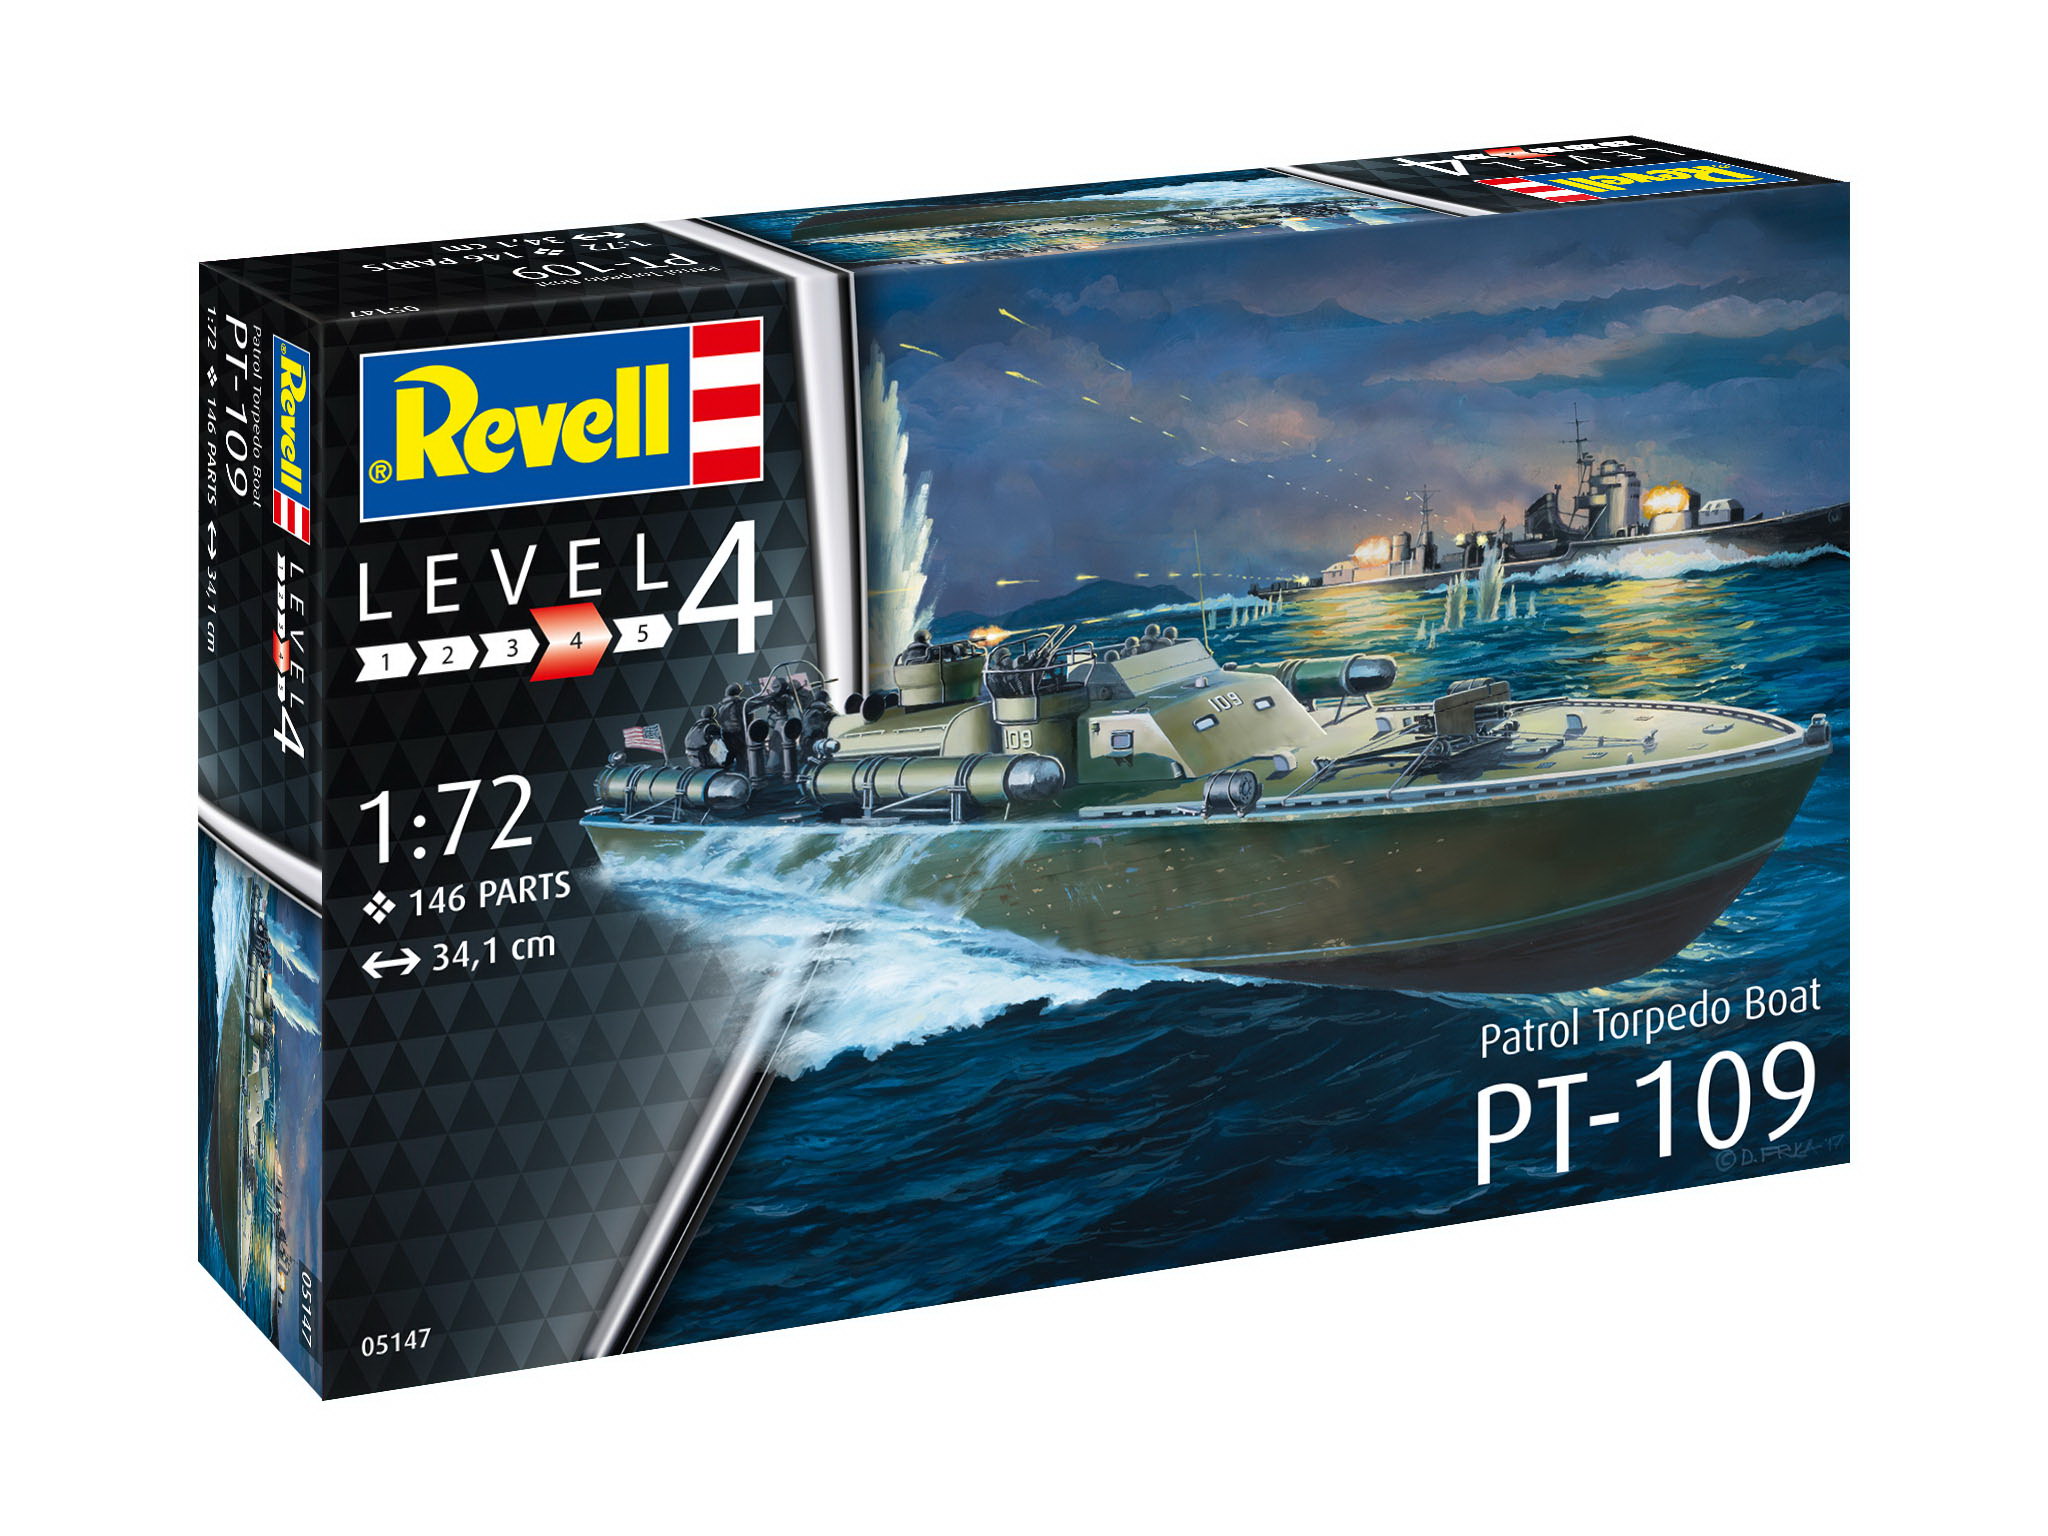 Revell 05147 - Patrol Torpedo Boat PT-109